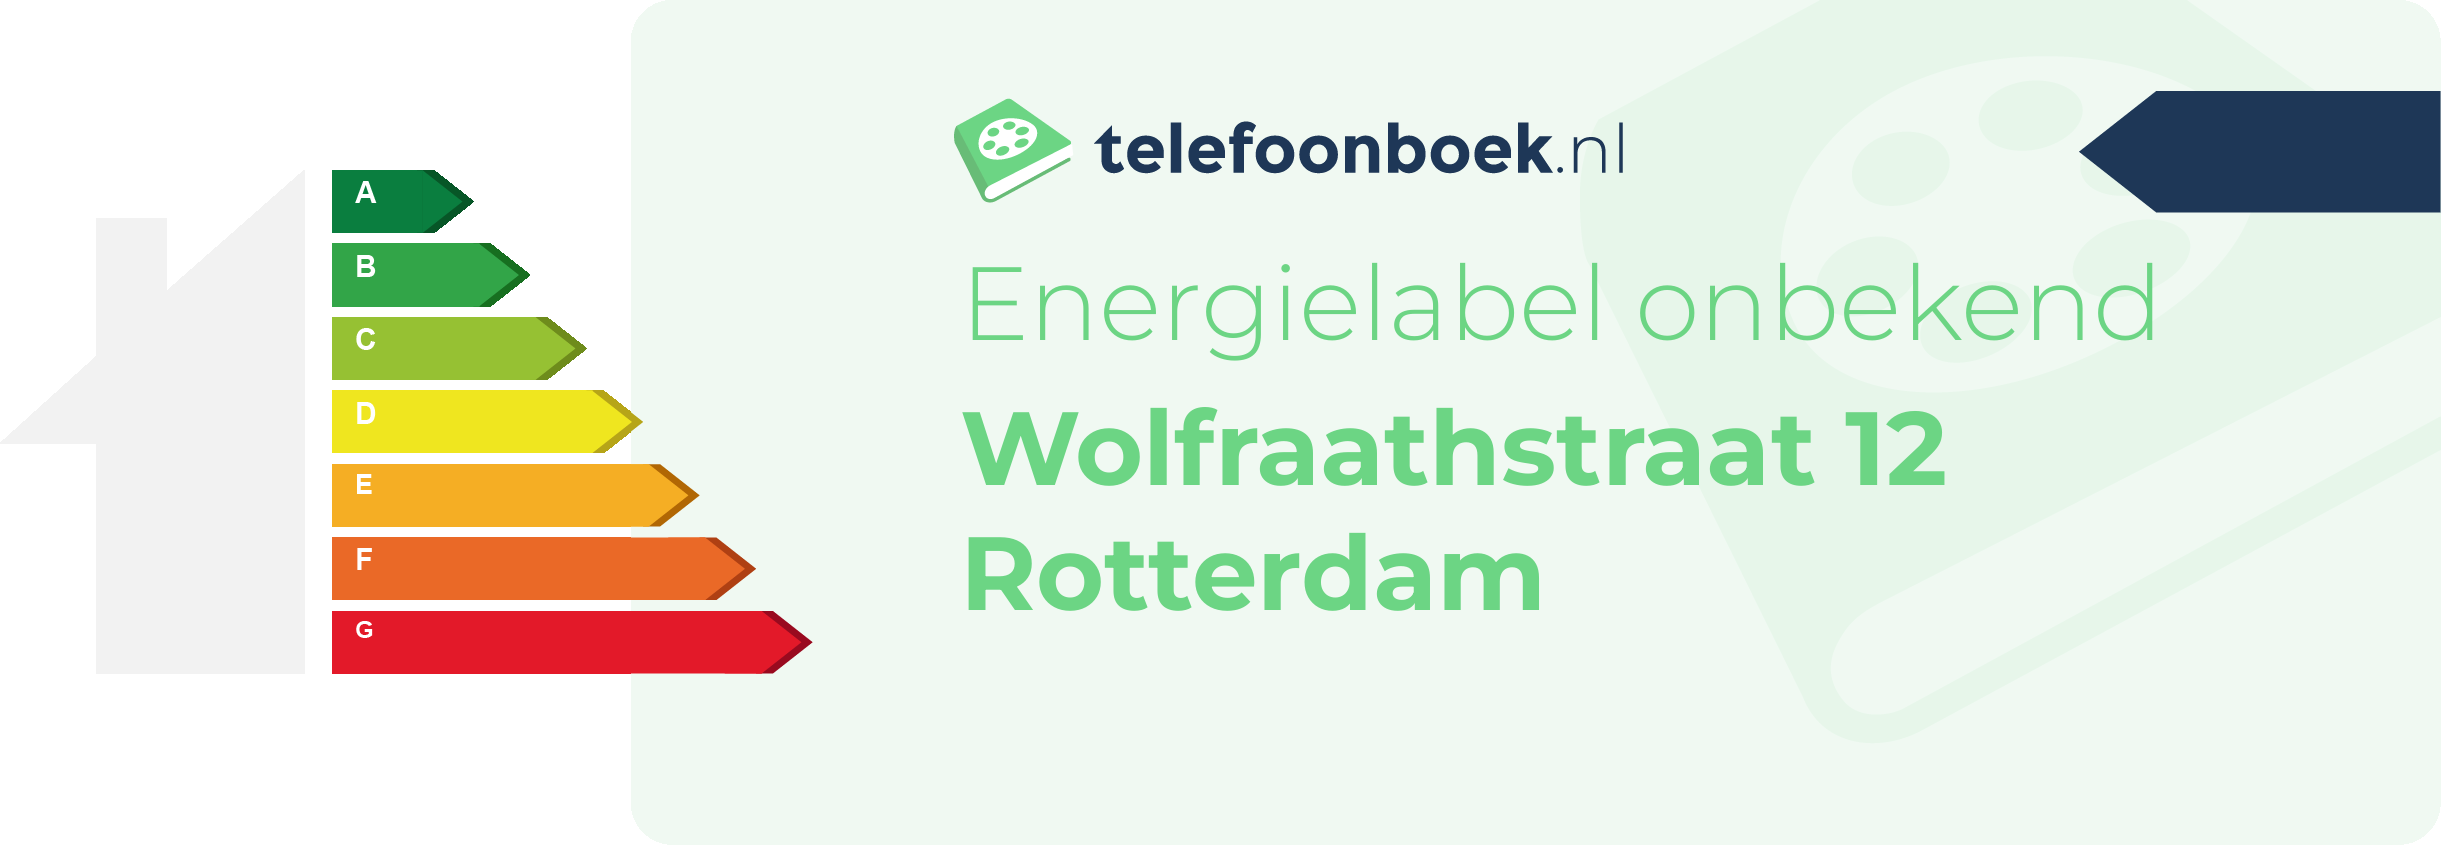 Energielabel Wolfraathstraat 12 Rotterdam